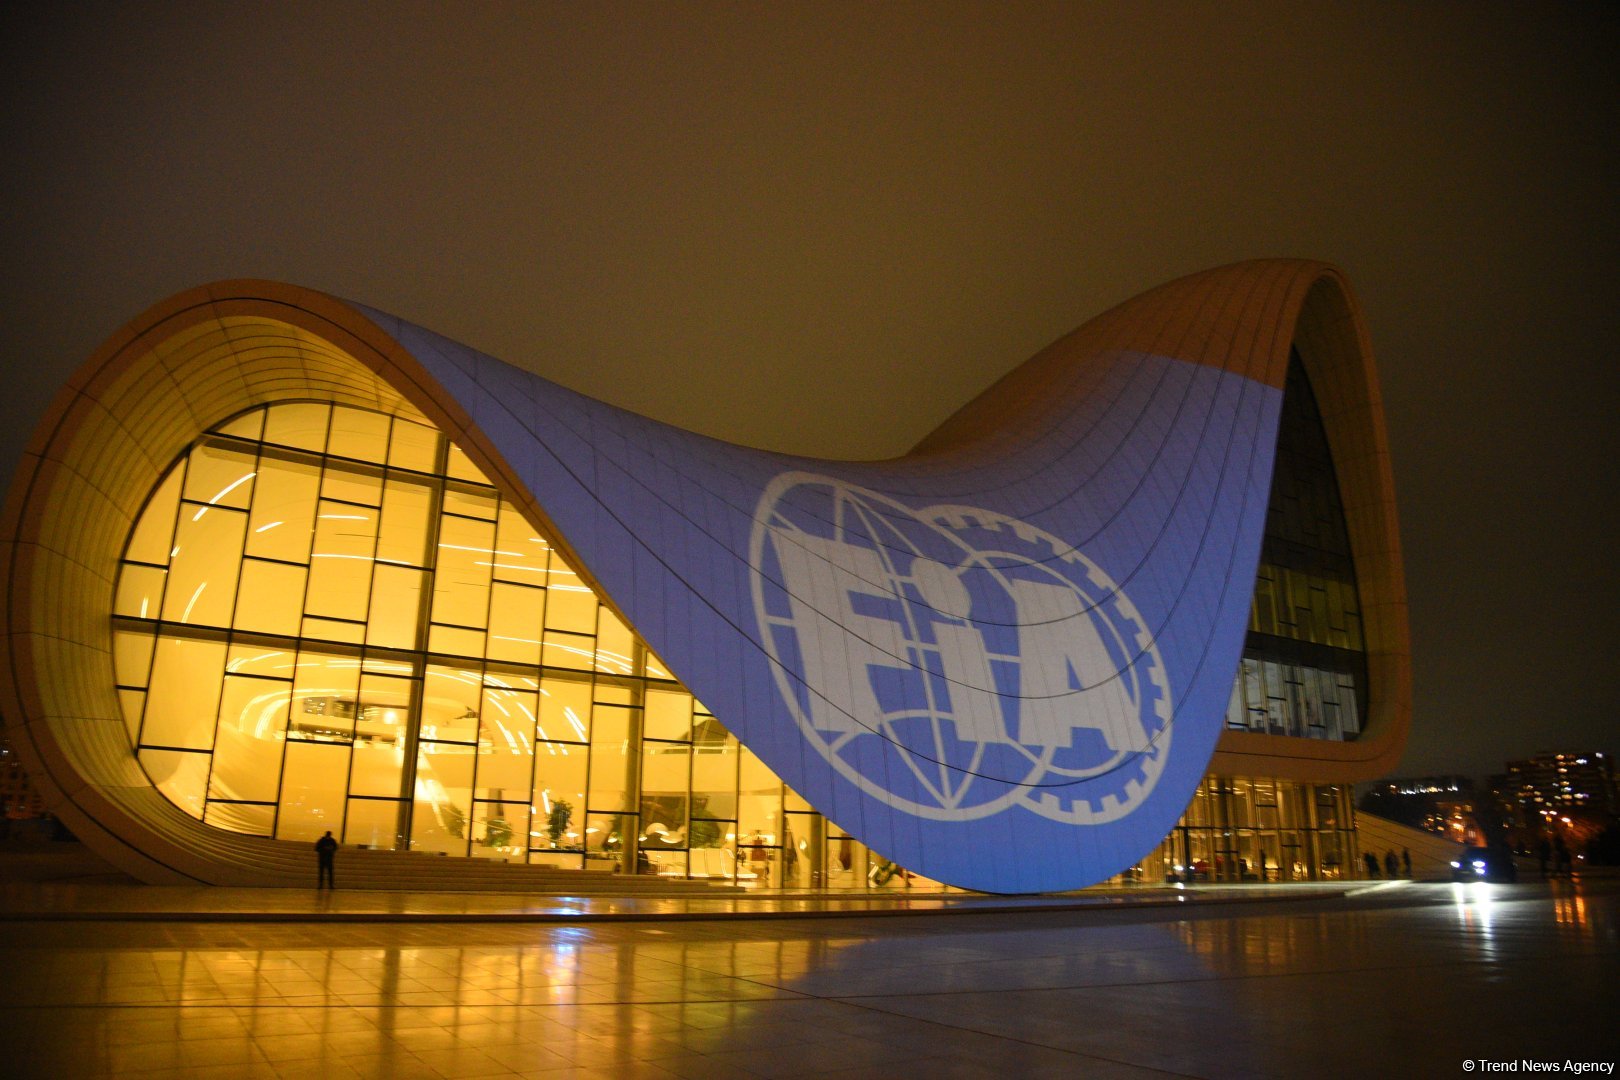 В Баку состоялось приветственное мероприятие недели FIA (ФОТО)